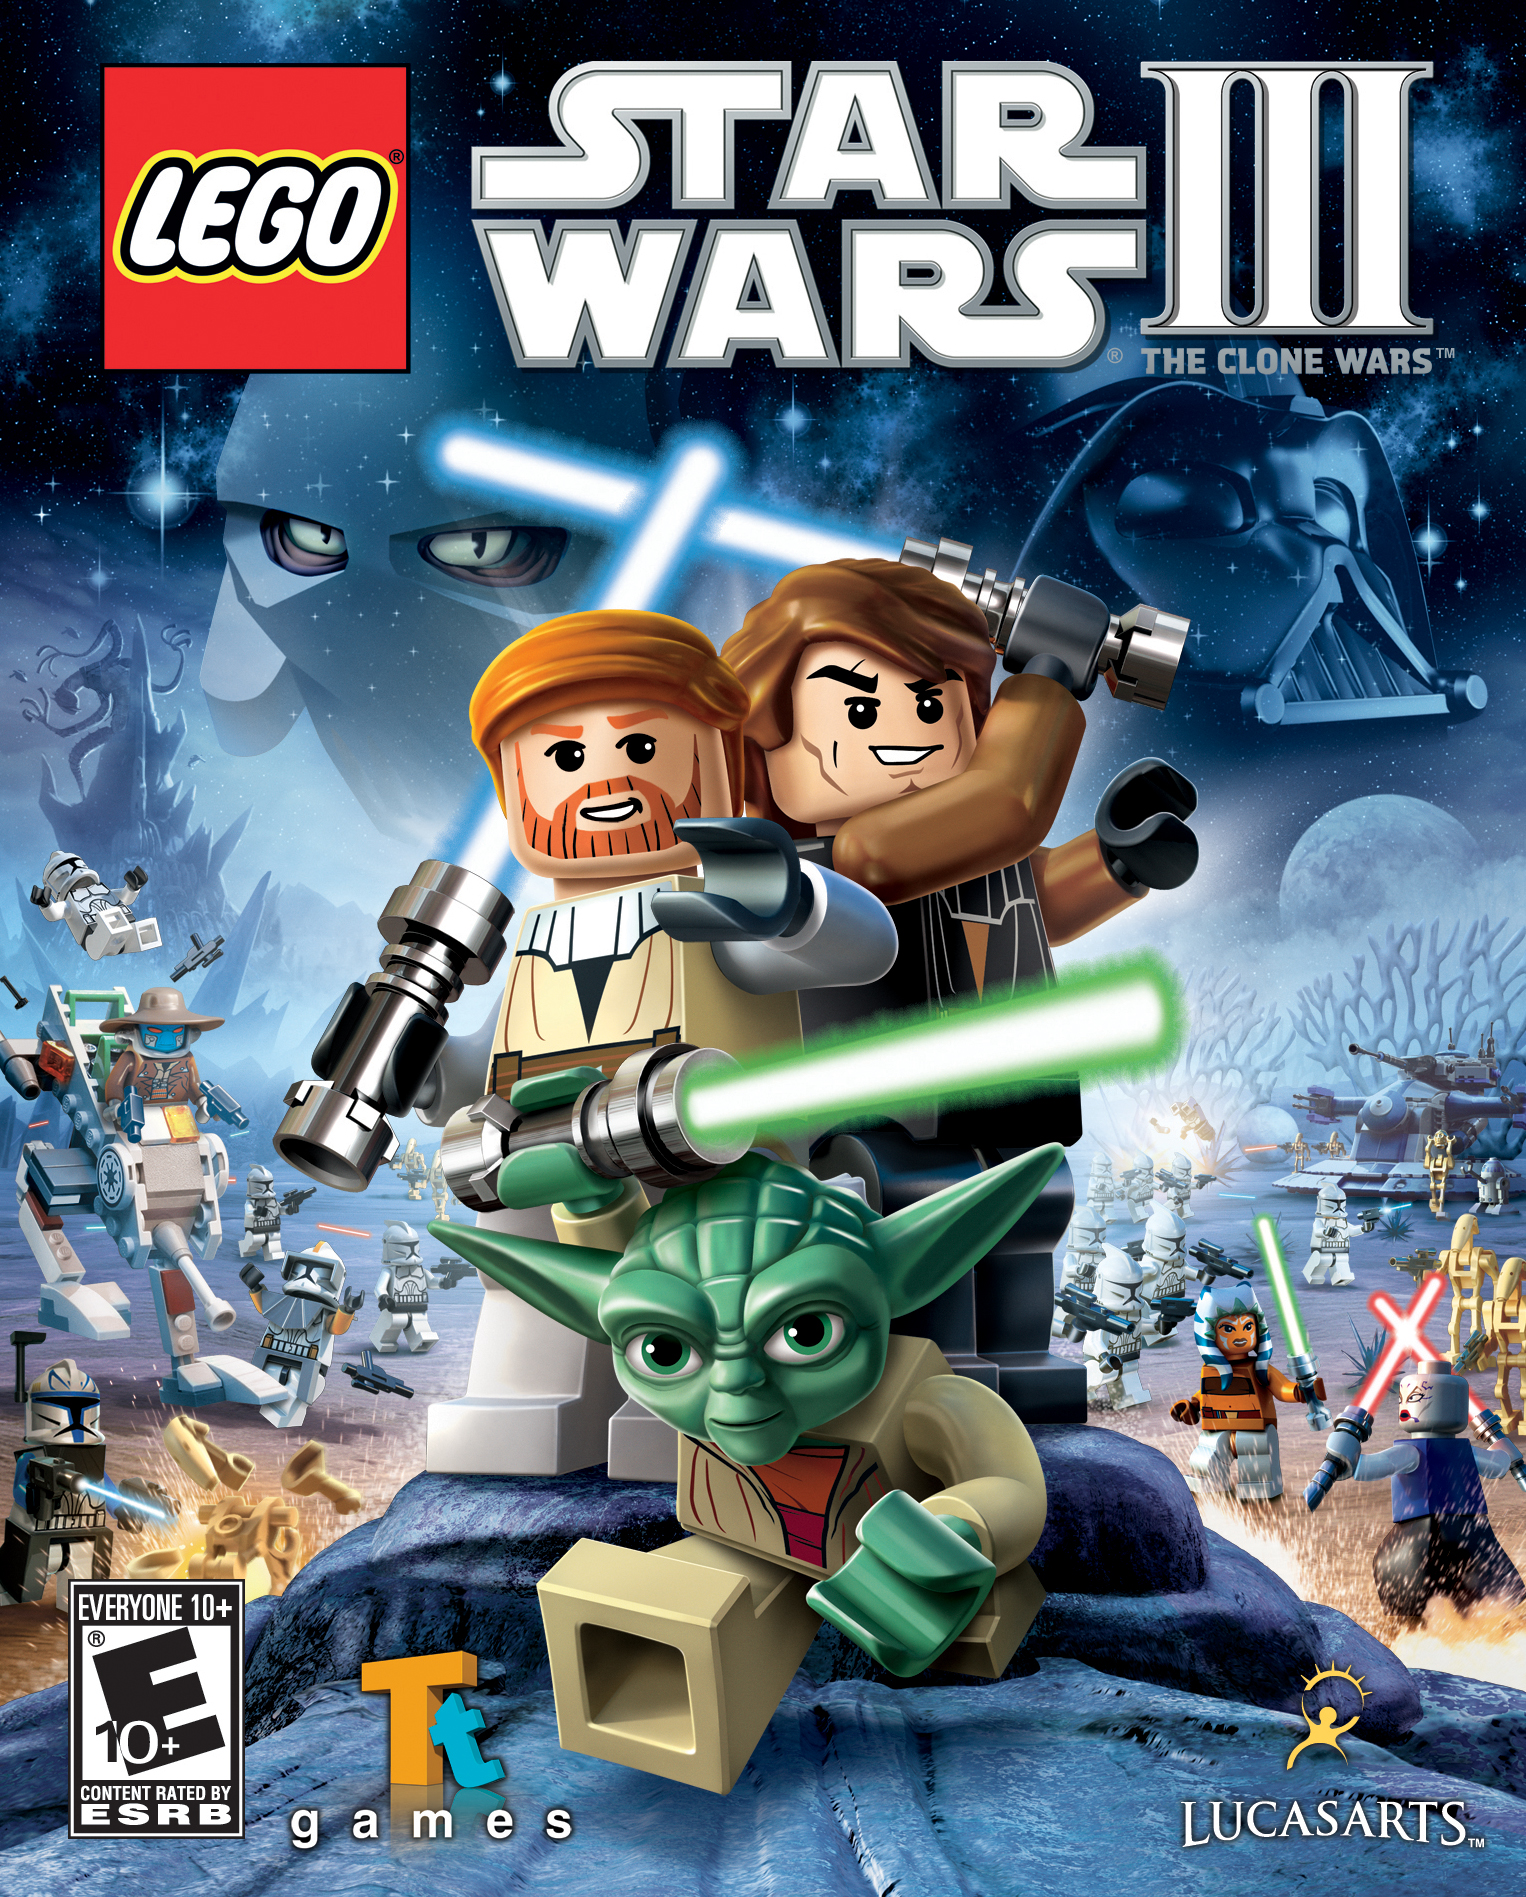 LEGO Star Wars III: The Clone Wars | LEGO Games Wiki | Fandom